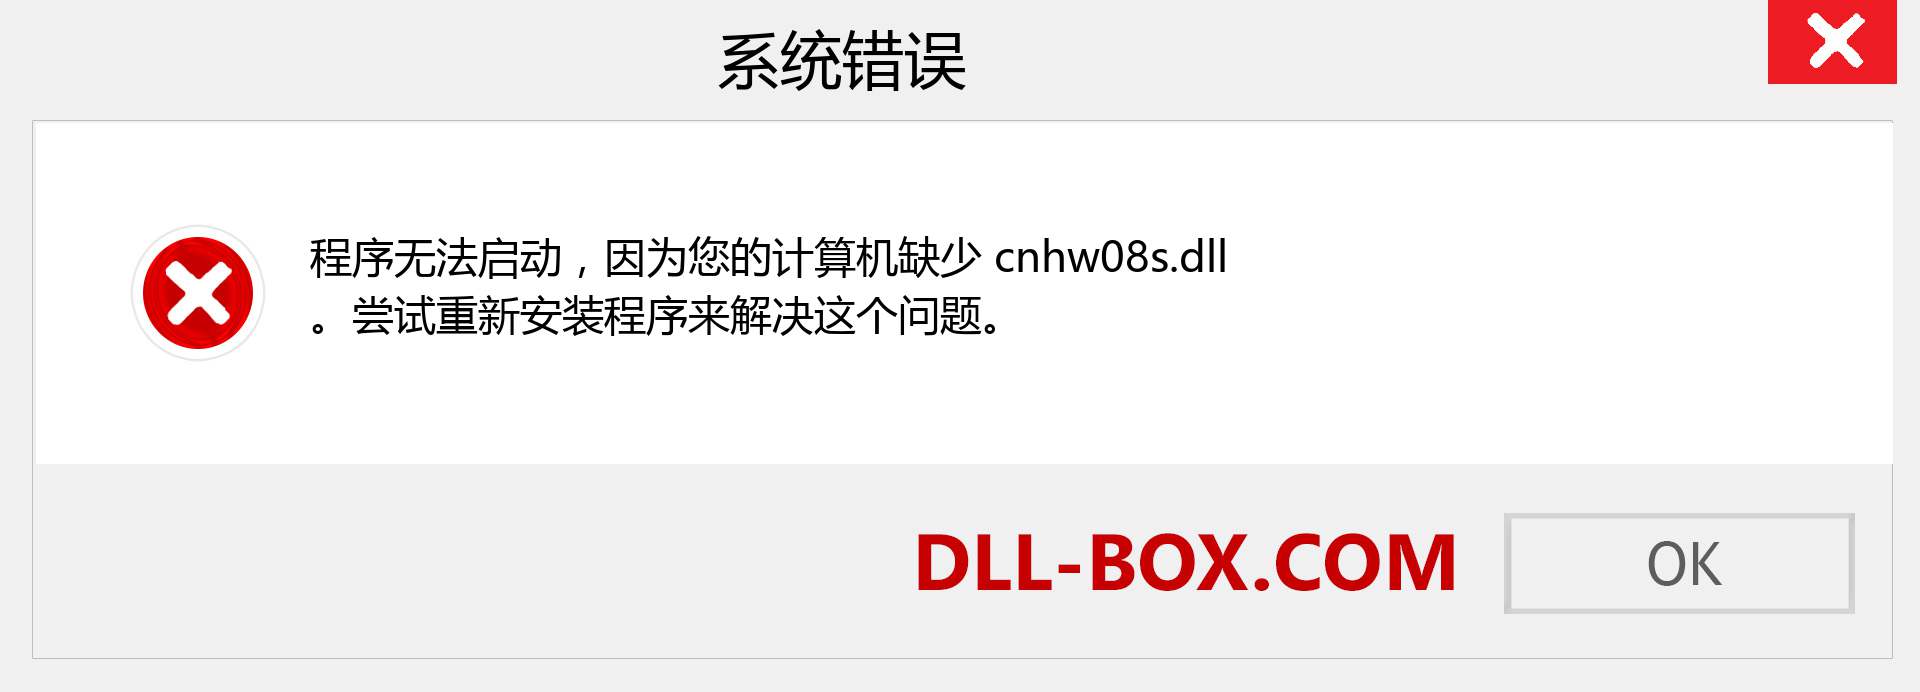 cnhw08s.dll 文件丢失？。 适用于 Windows 7、8、10 的下载 - 修复 Windows、照片、图像上的 cnhw08s dll 丢失错误